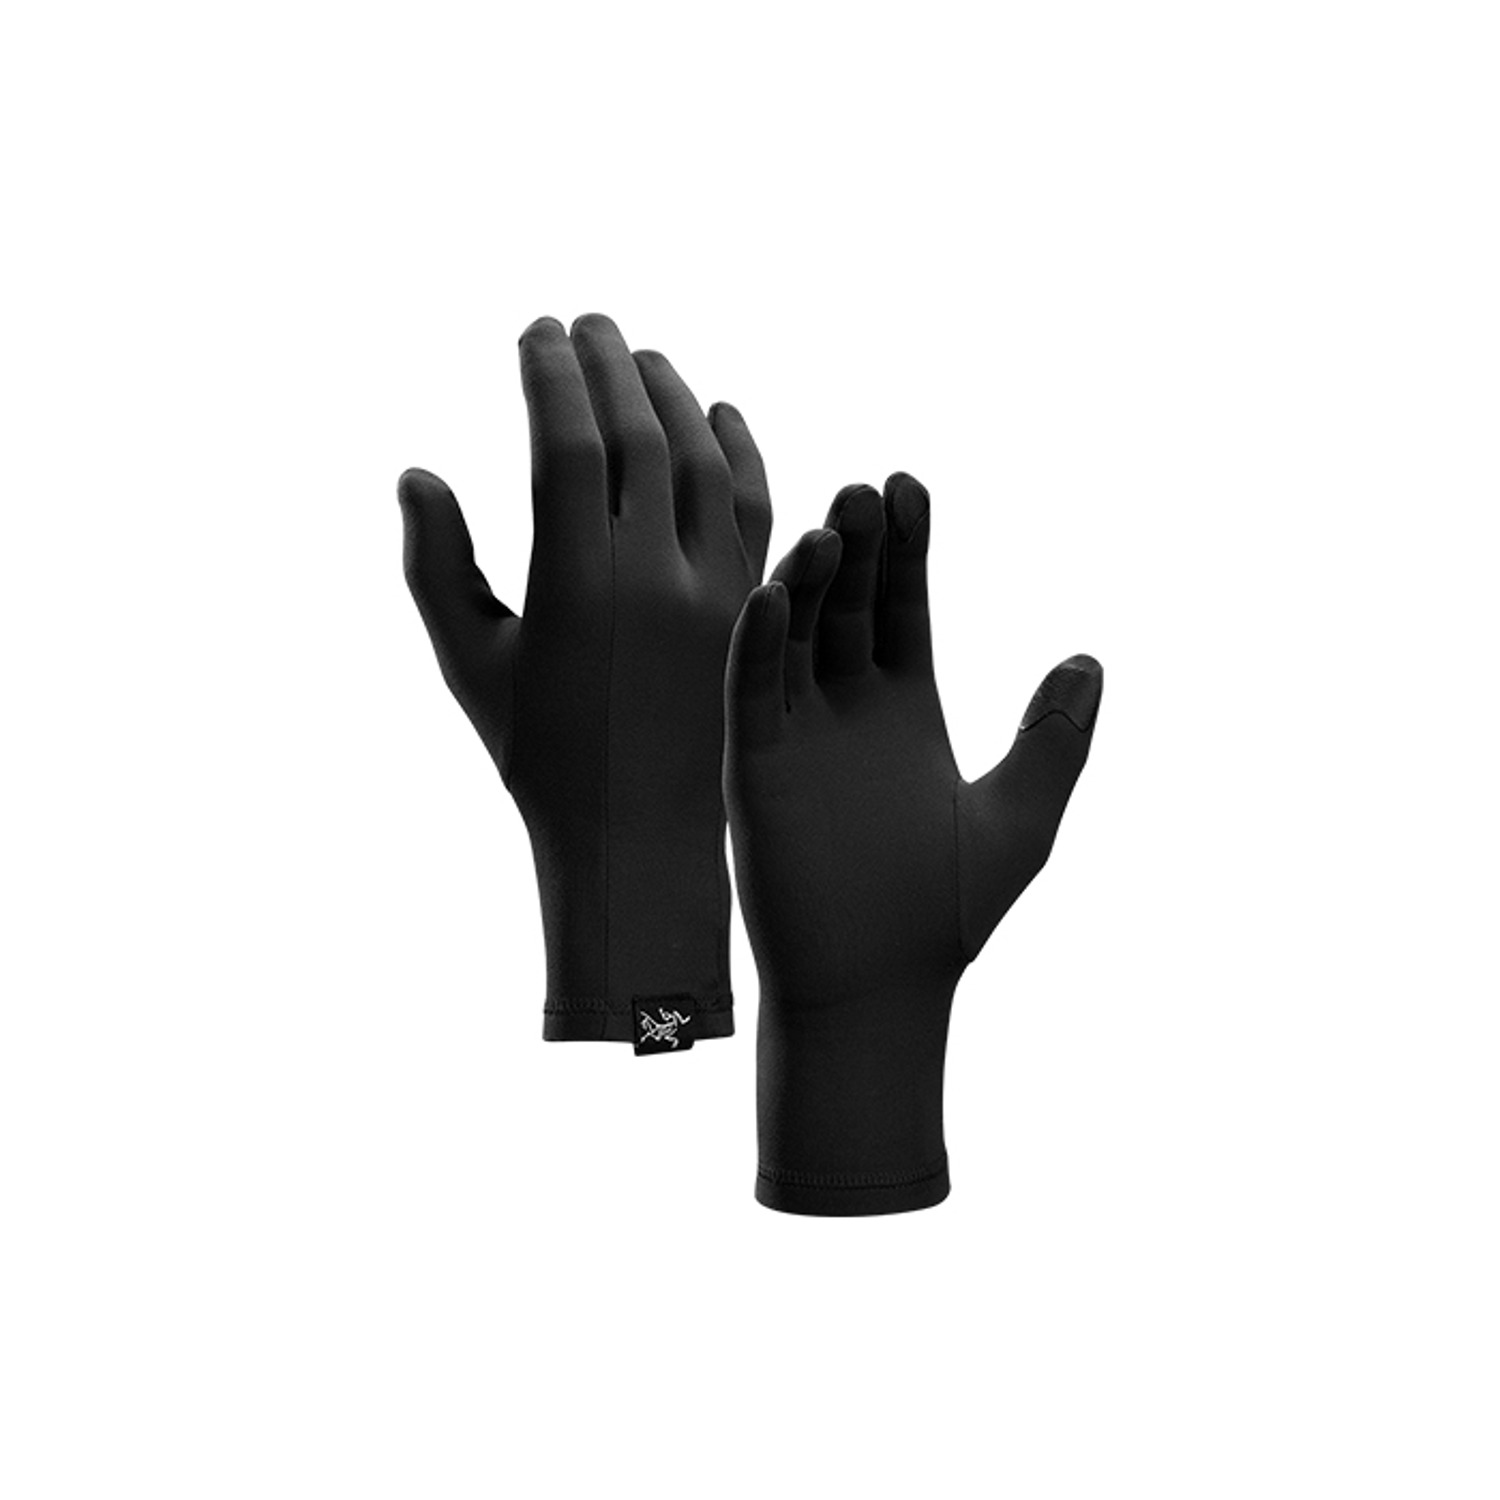 gothic glove black